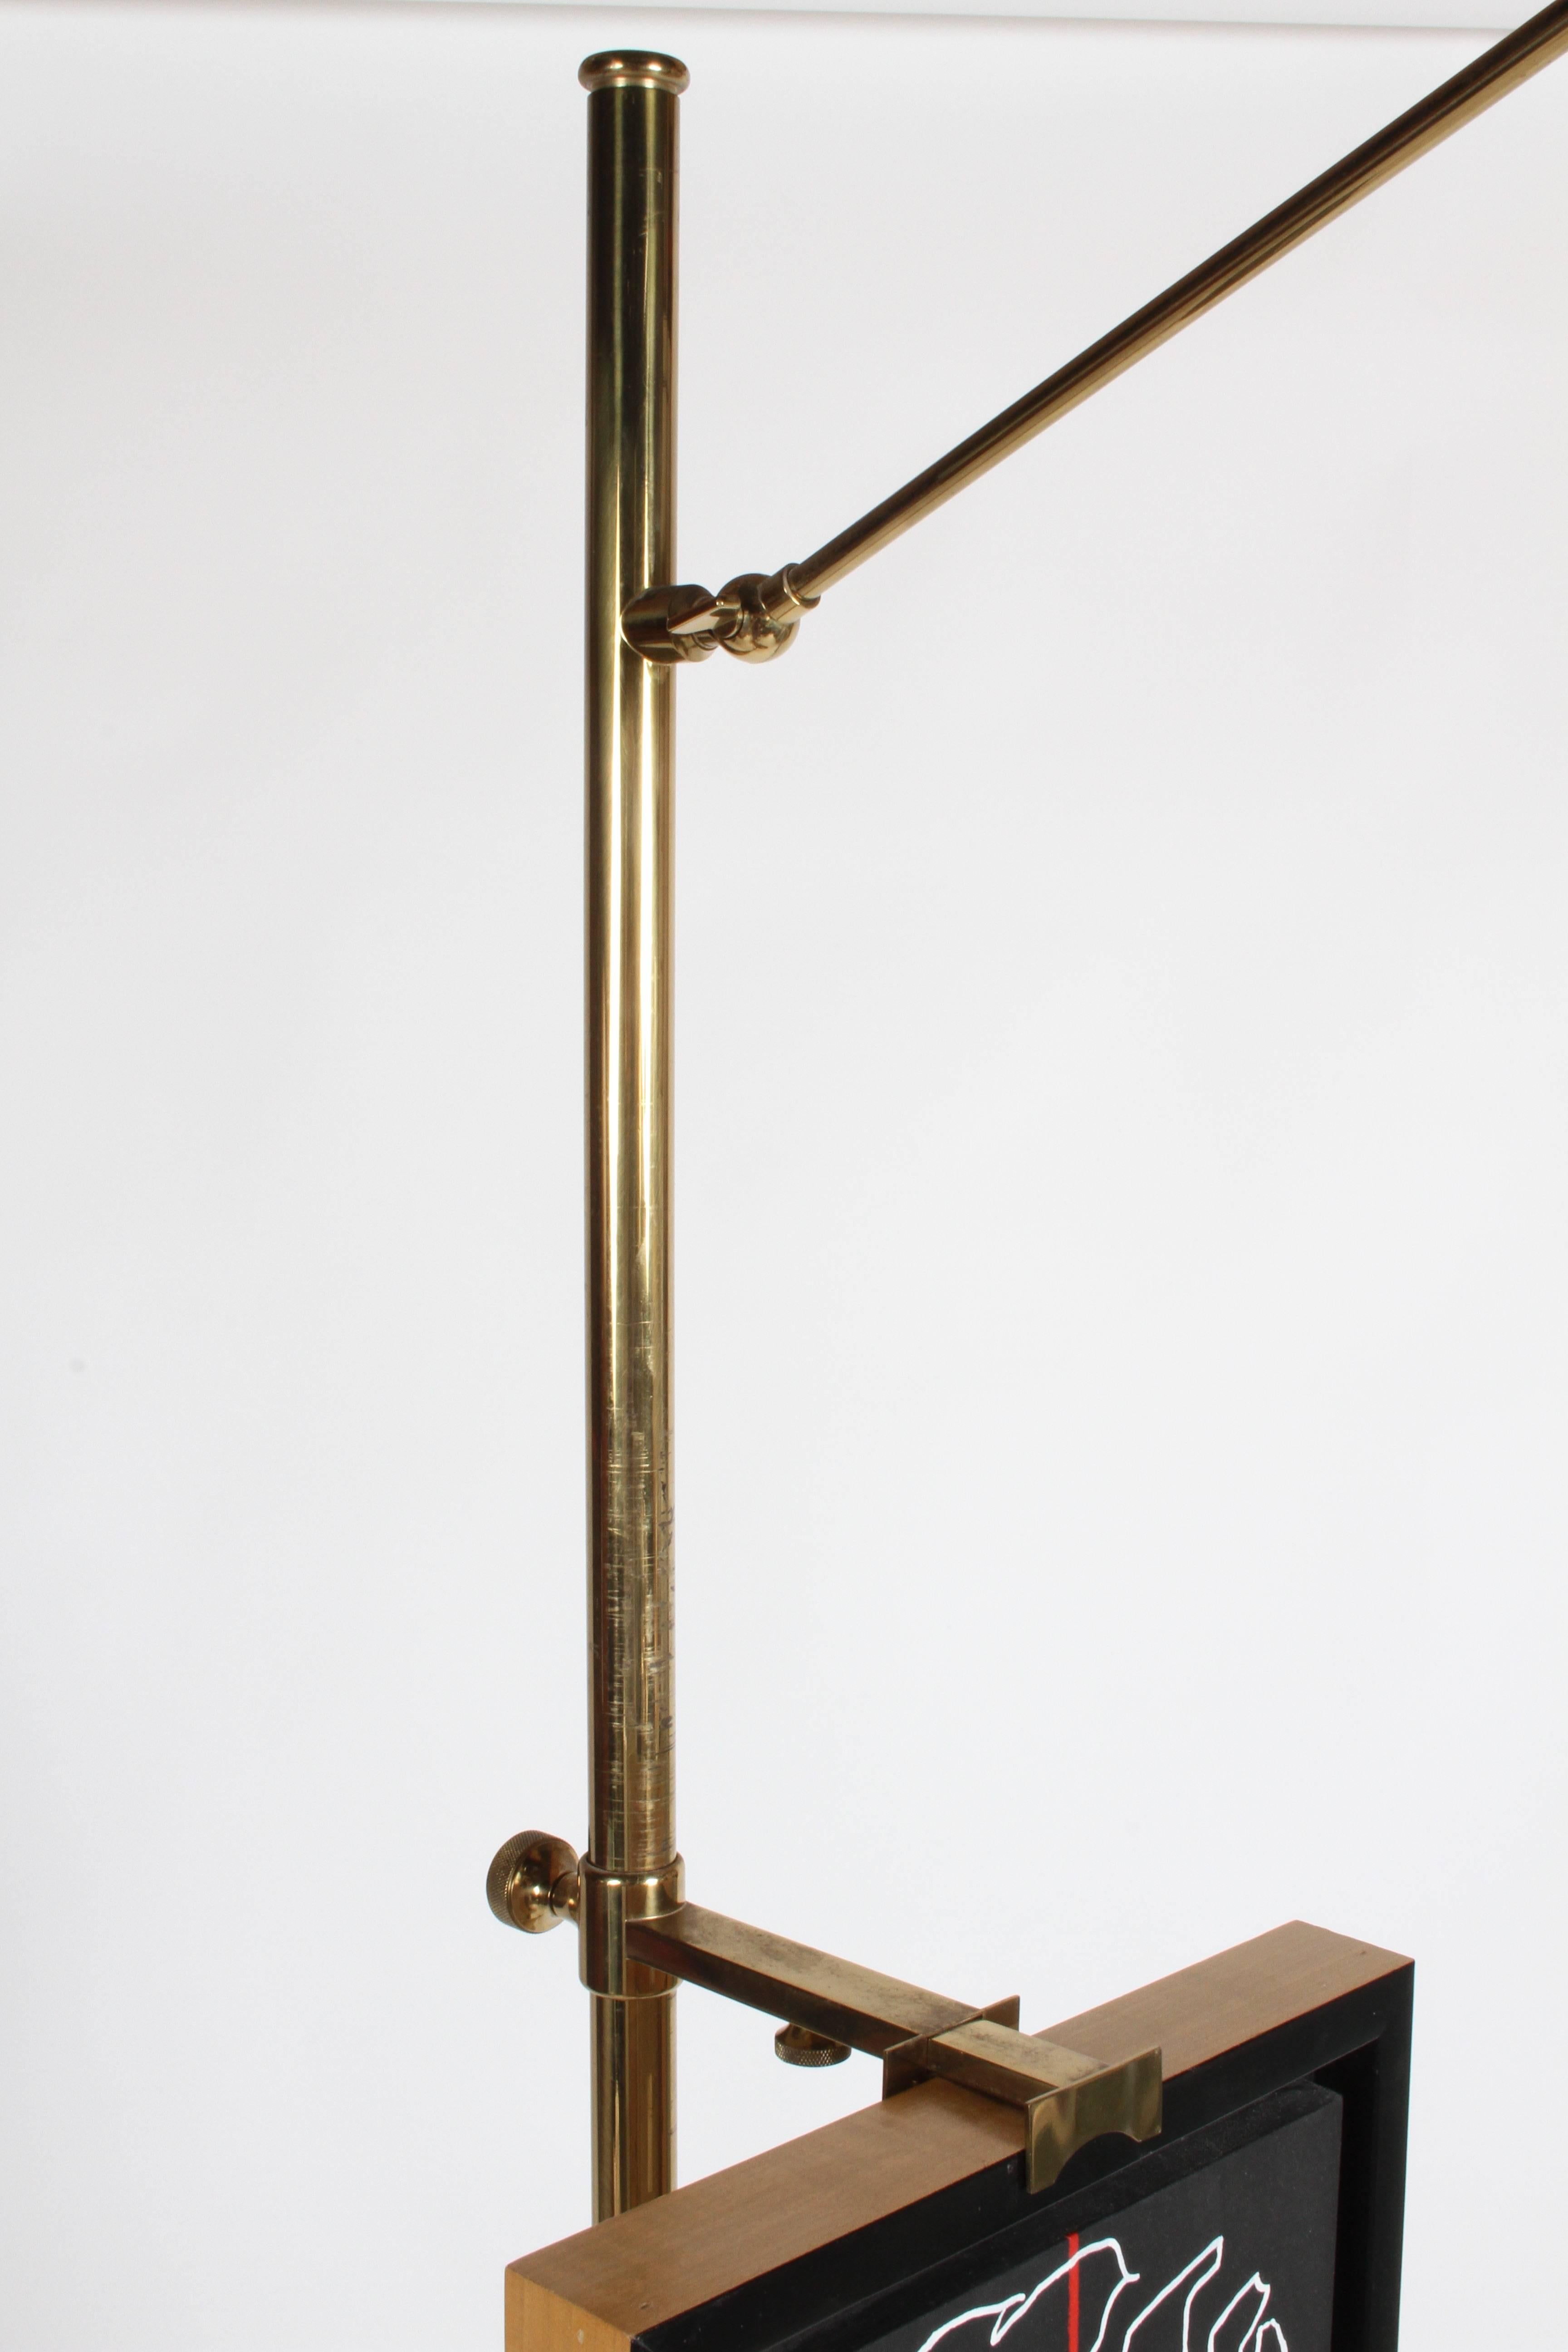 Arredoluce Brass Art Easel with Lamp by Angelo Lelli 1